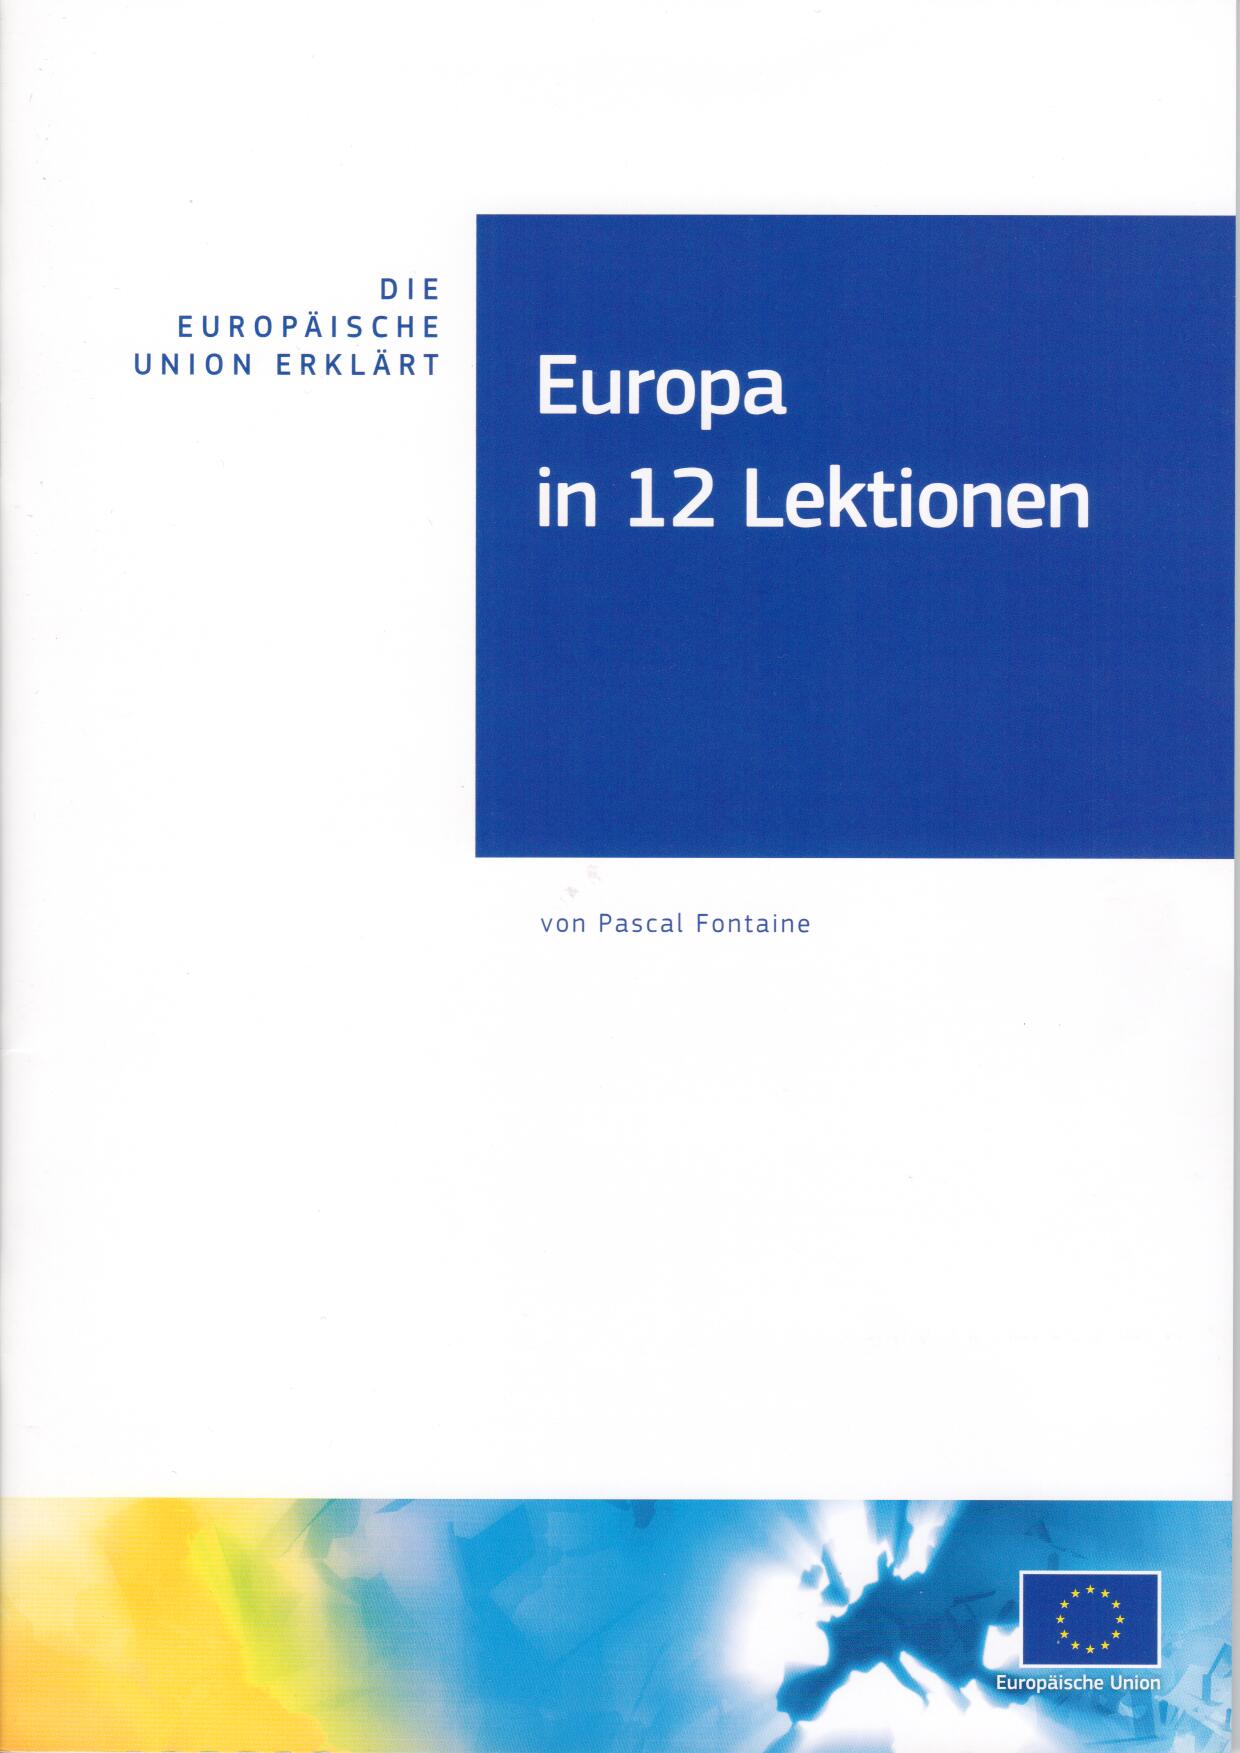 Europa in 12 Lektionen von Pascal Fontaine. Wissenswertes zu Europa in zwoelf Kapiteln (Lektionen)